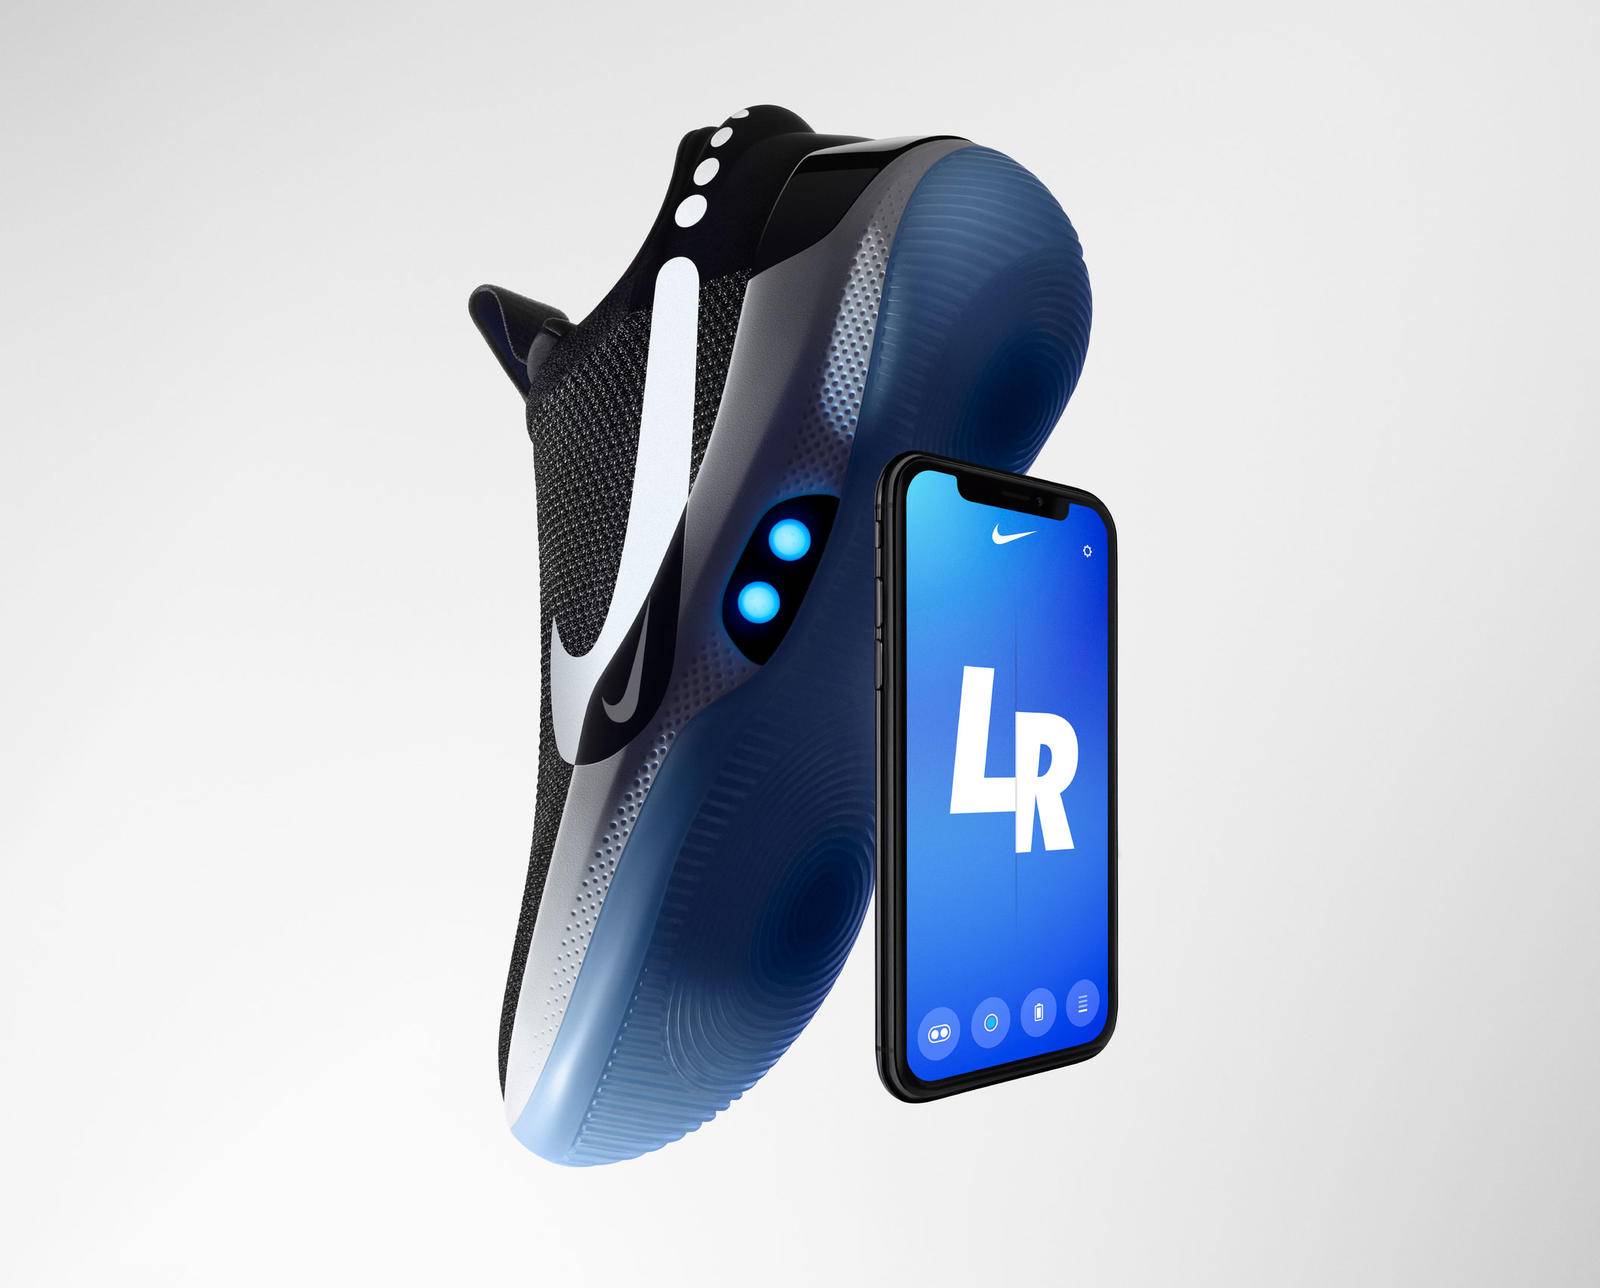 Tênis inteligente da Nike deixa de funcionar após atualização via Android